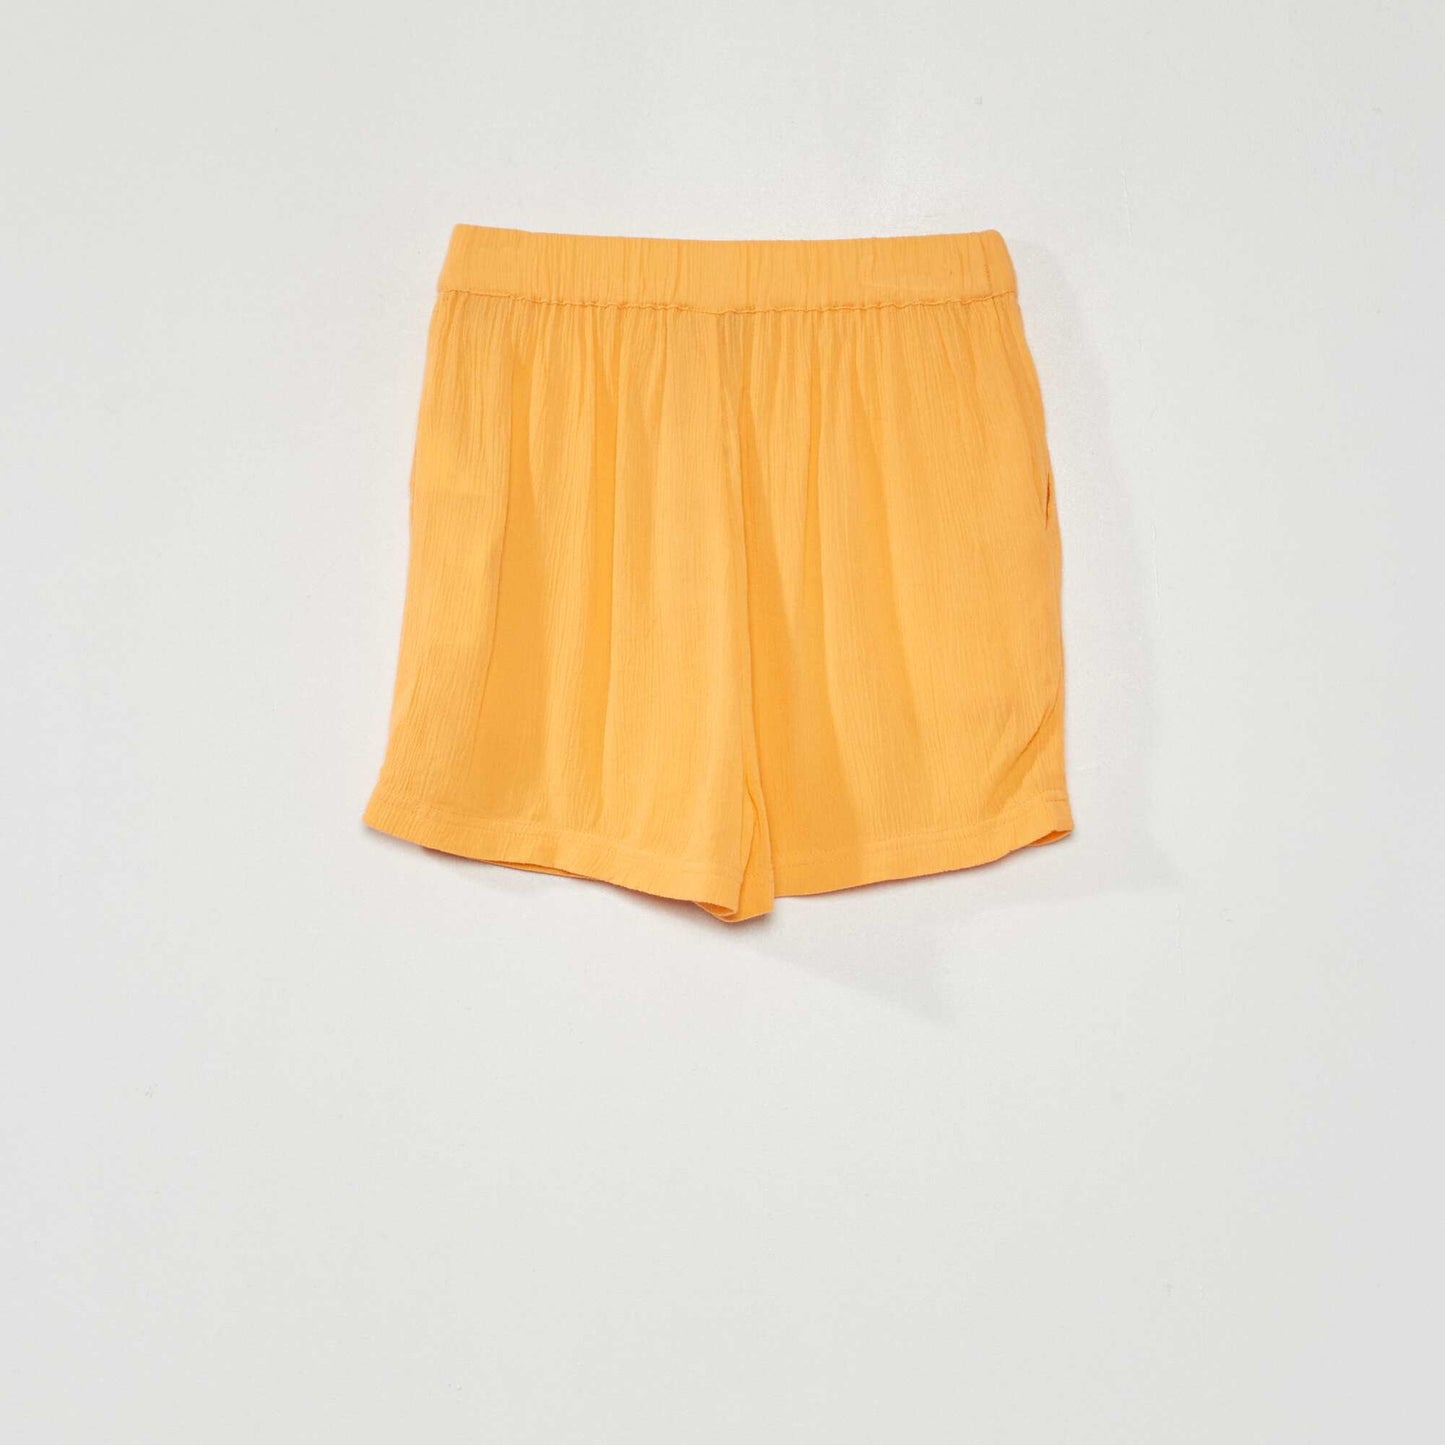 Flowing plain shorts apricot